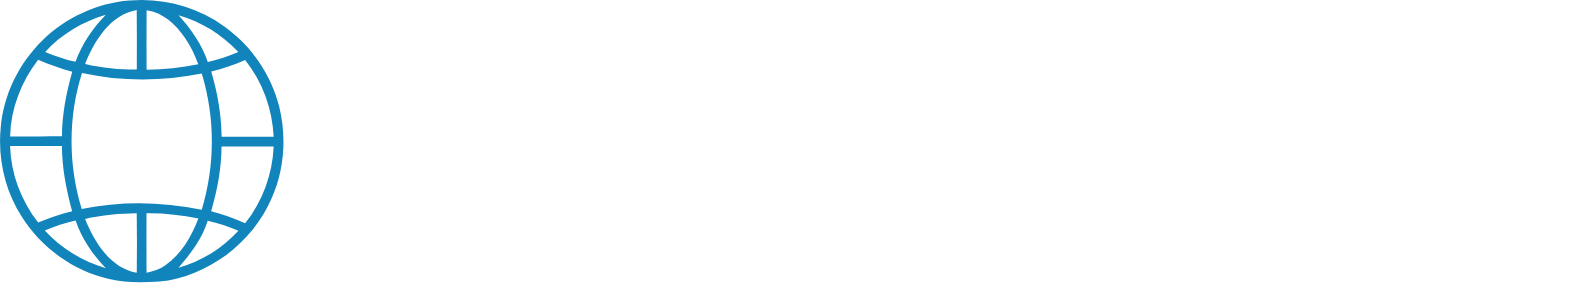 Global Beta logo large for dark backgrounds (transparent PNG)